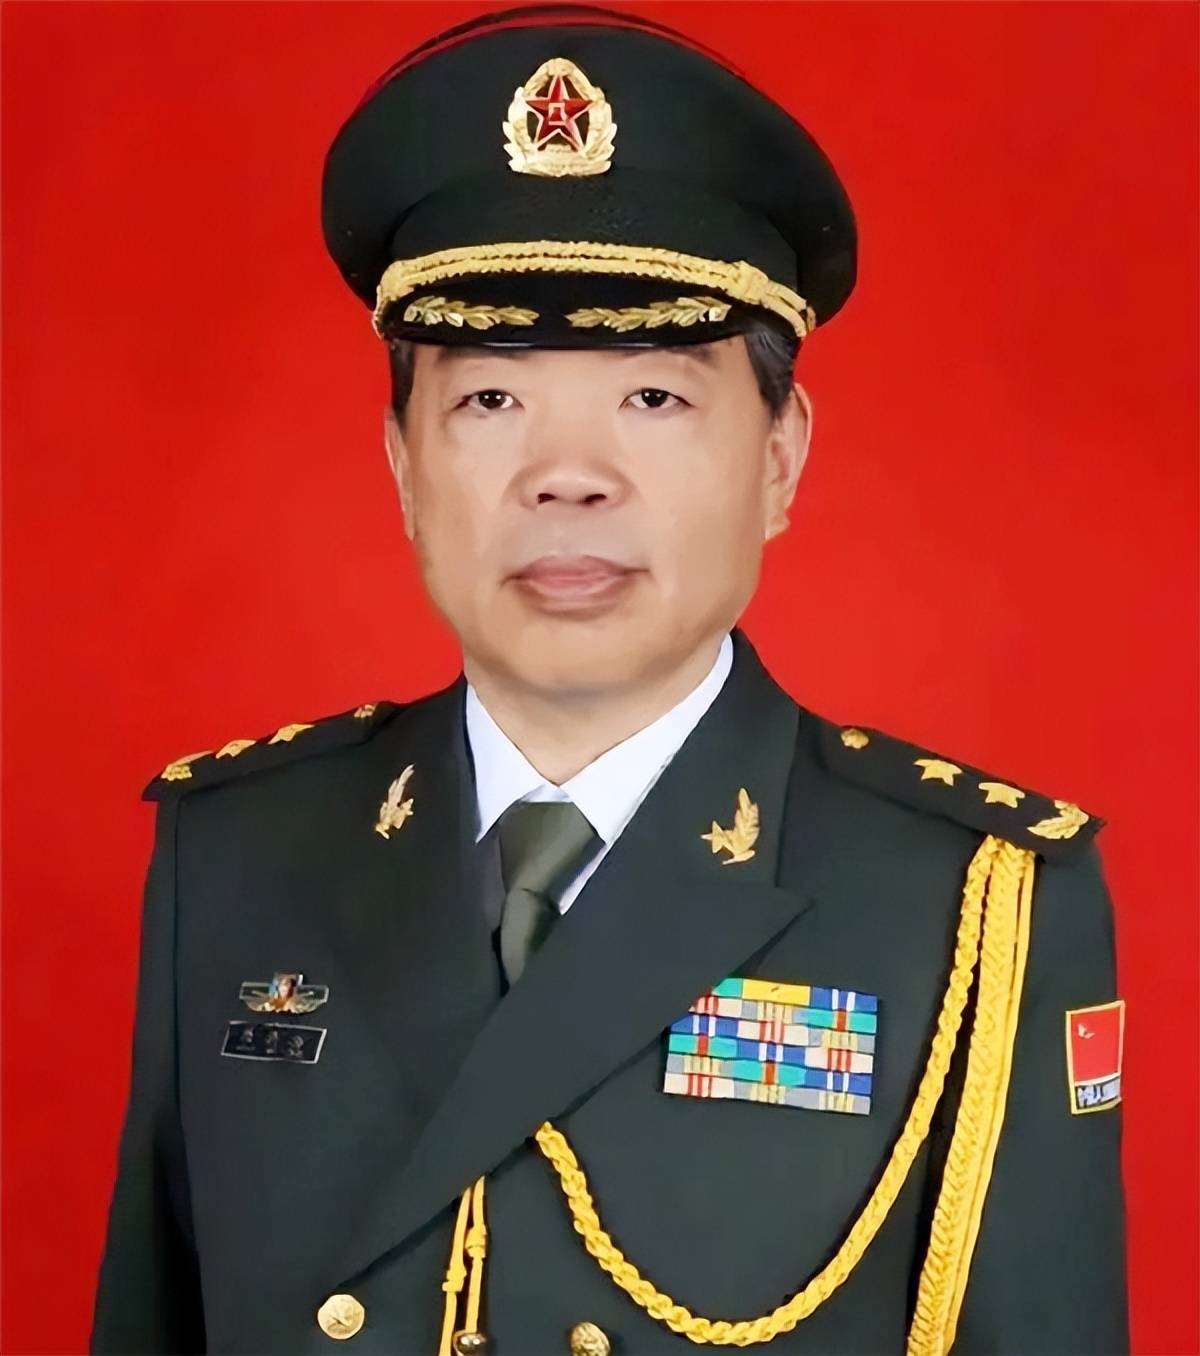 他是开国上将之子,52岁被授少将军衔,59岁晋升为中将,如今71岁